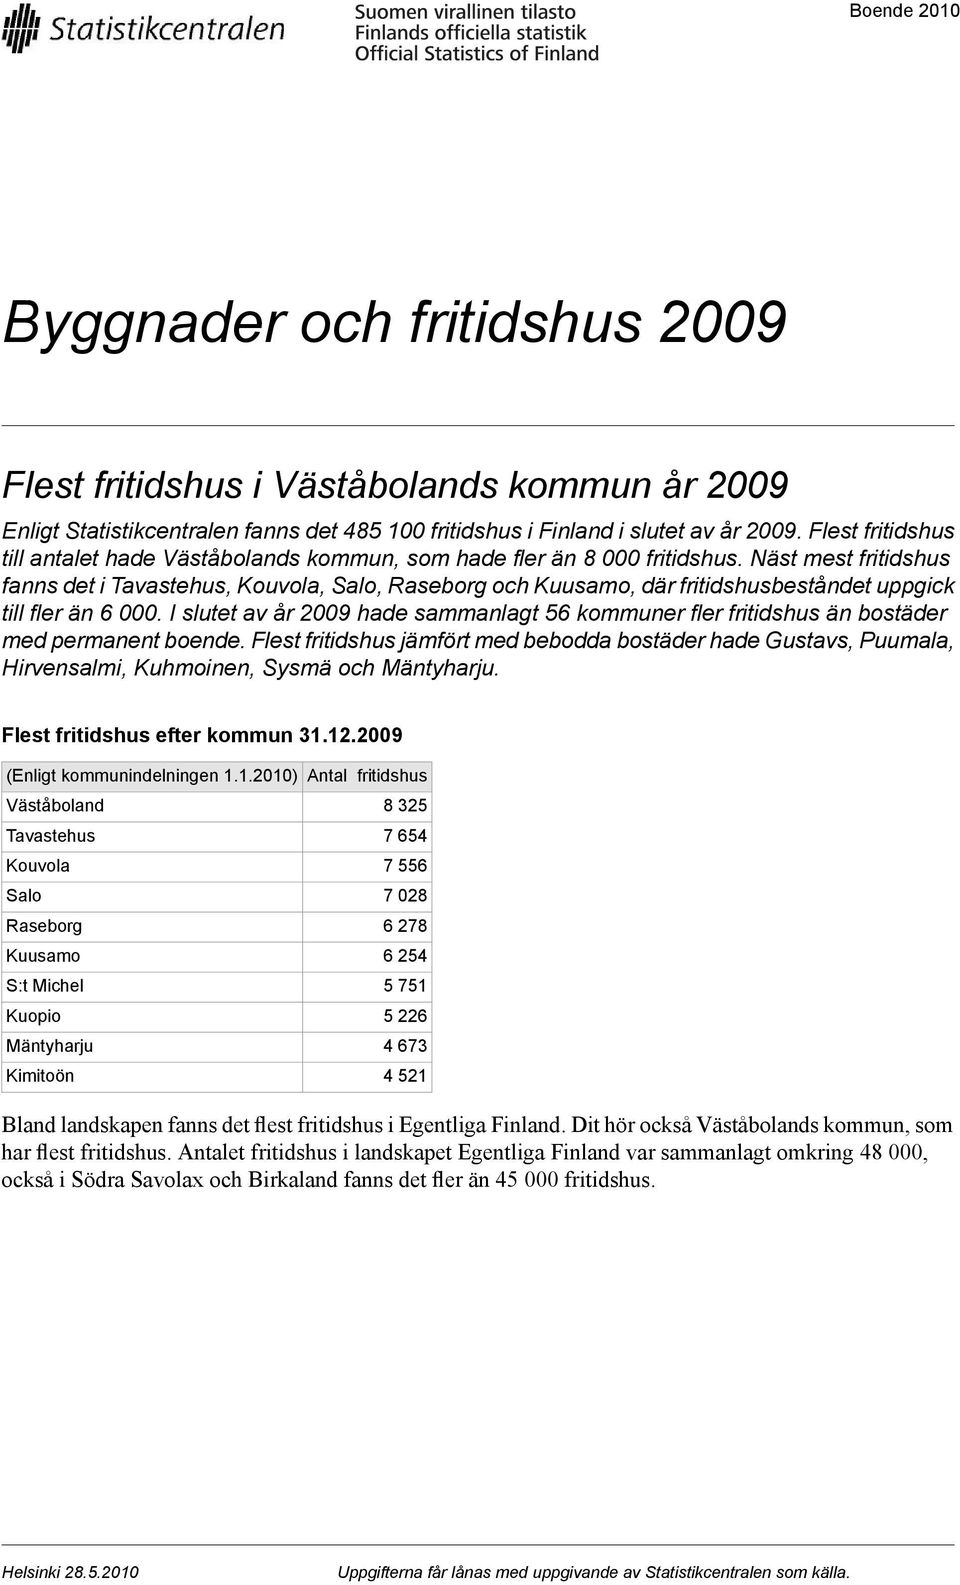 Näst mest fritidshus fanns det i Tavastehus, Kouvola, Salo, Raseborg och Kuusamo, där fritidshusbeståndet uppgick till fler än 6 000.